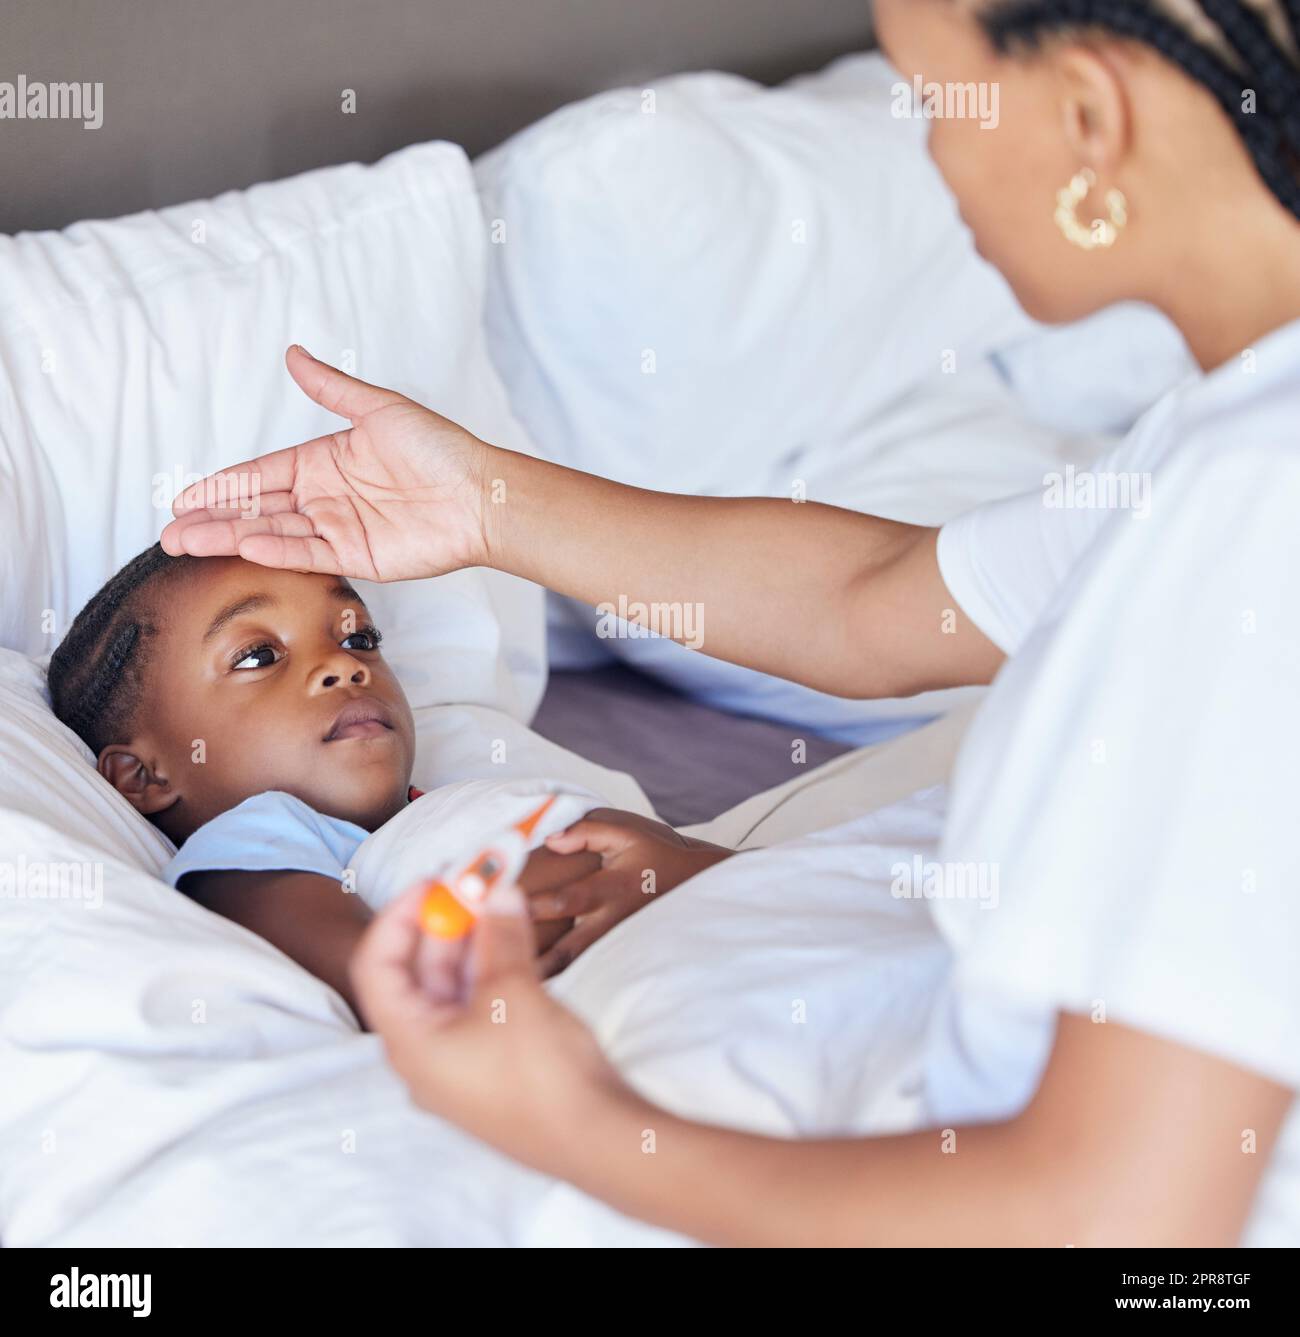 Bambina malata a letto mentre sua madre usa un termometro per controllare la sua temperatura. I genitori single neri sentono la fronte delle figlie. Bambino afroamericano che si sente male mentre sua madre controlla la febbre Foto Stock